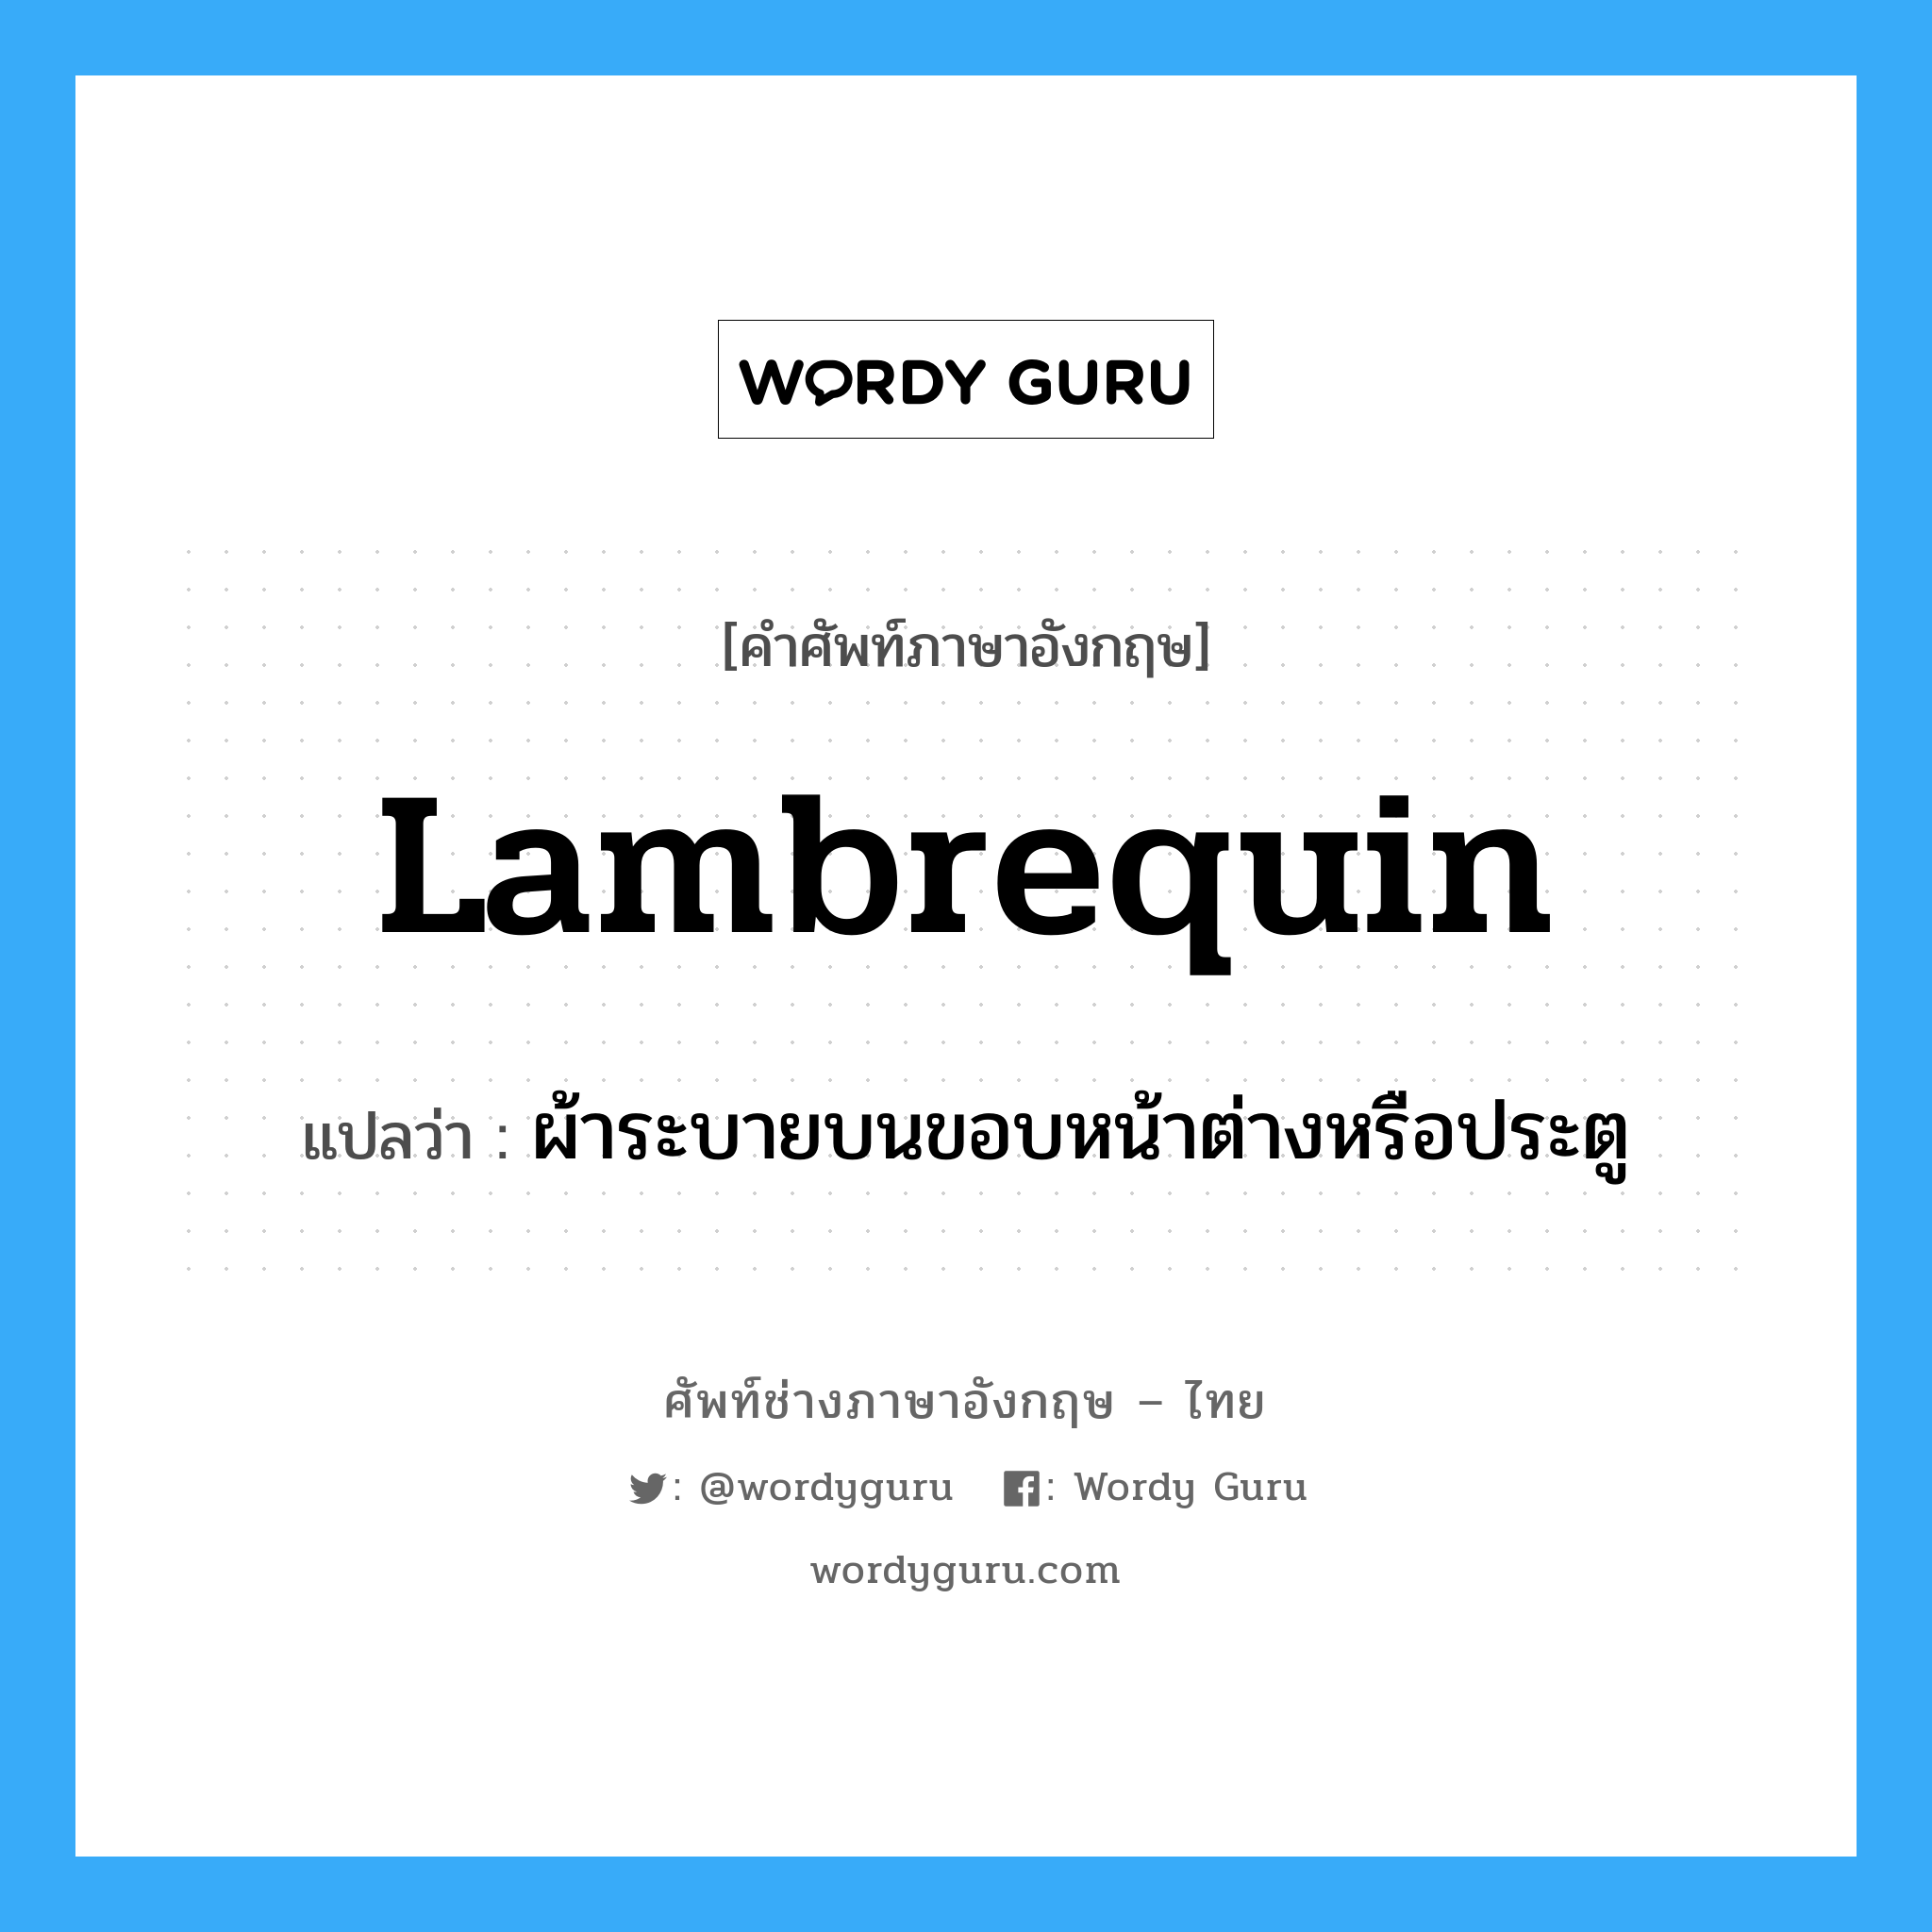 lambrequin แปลว่า?, คำศัพท์ช่างภาษาอังกฤษ - ไทย lambrequin คำศัพท์ภาษาอังกฤษ lambrequin แปลว่า ผ้าระบายบนขอบหน้าต่างหรือประตู